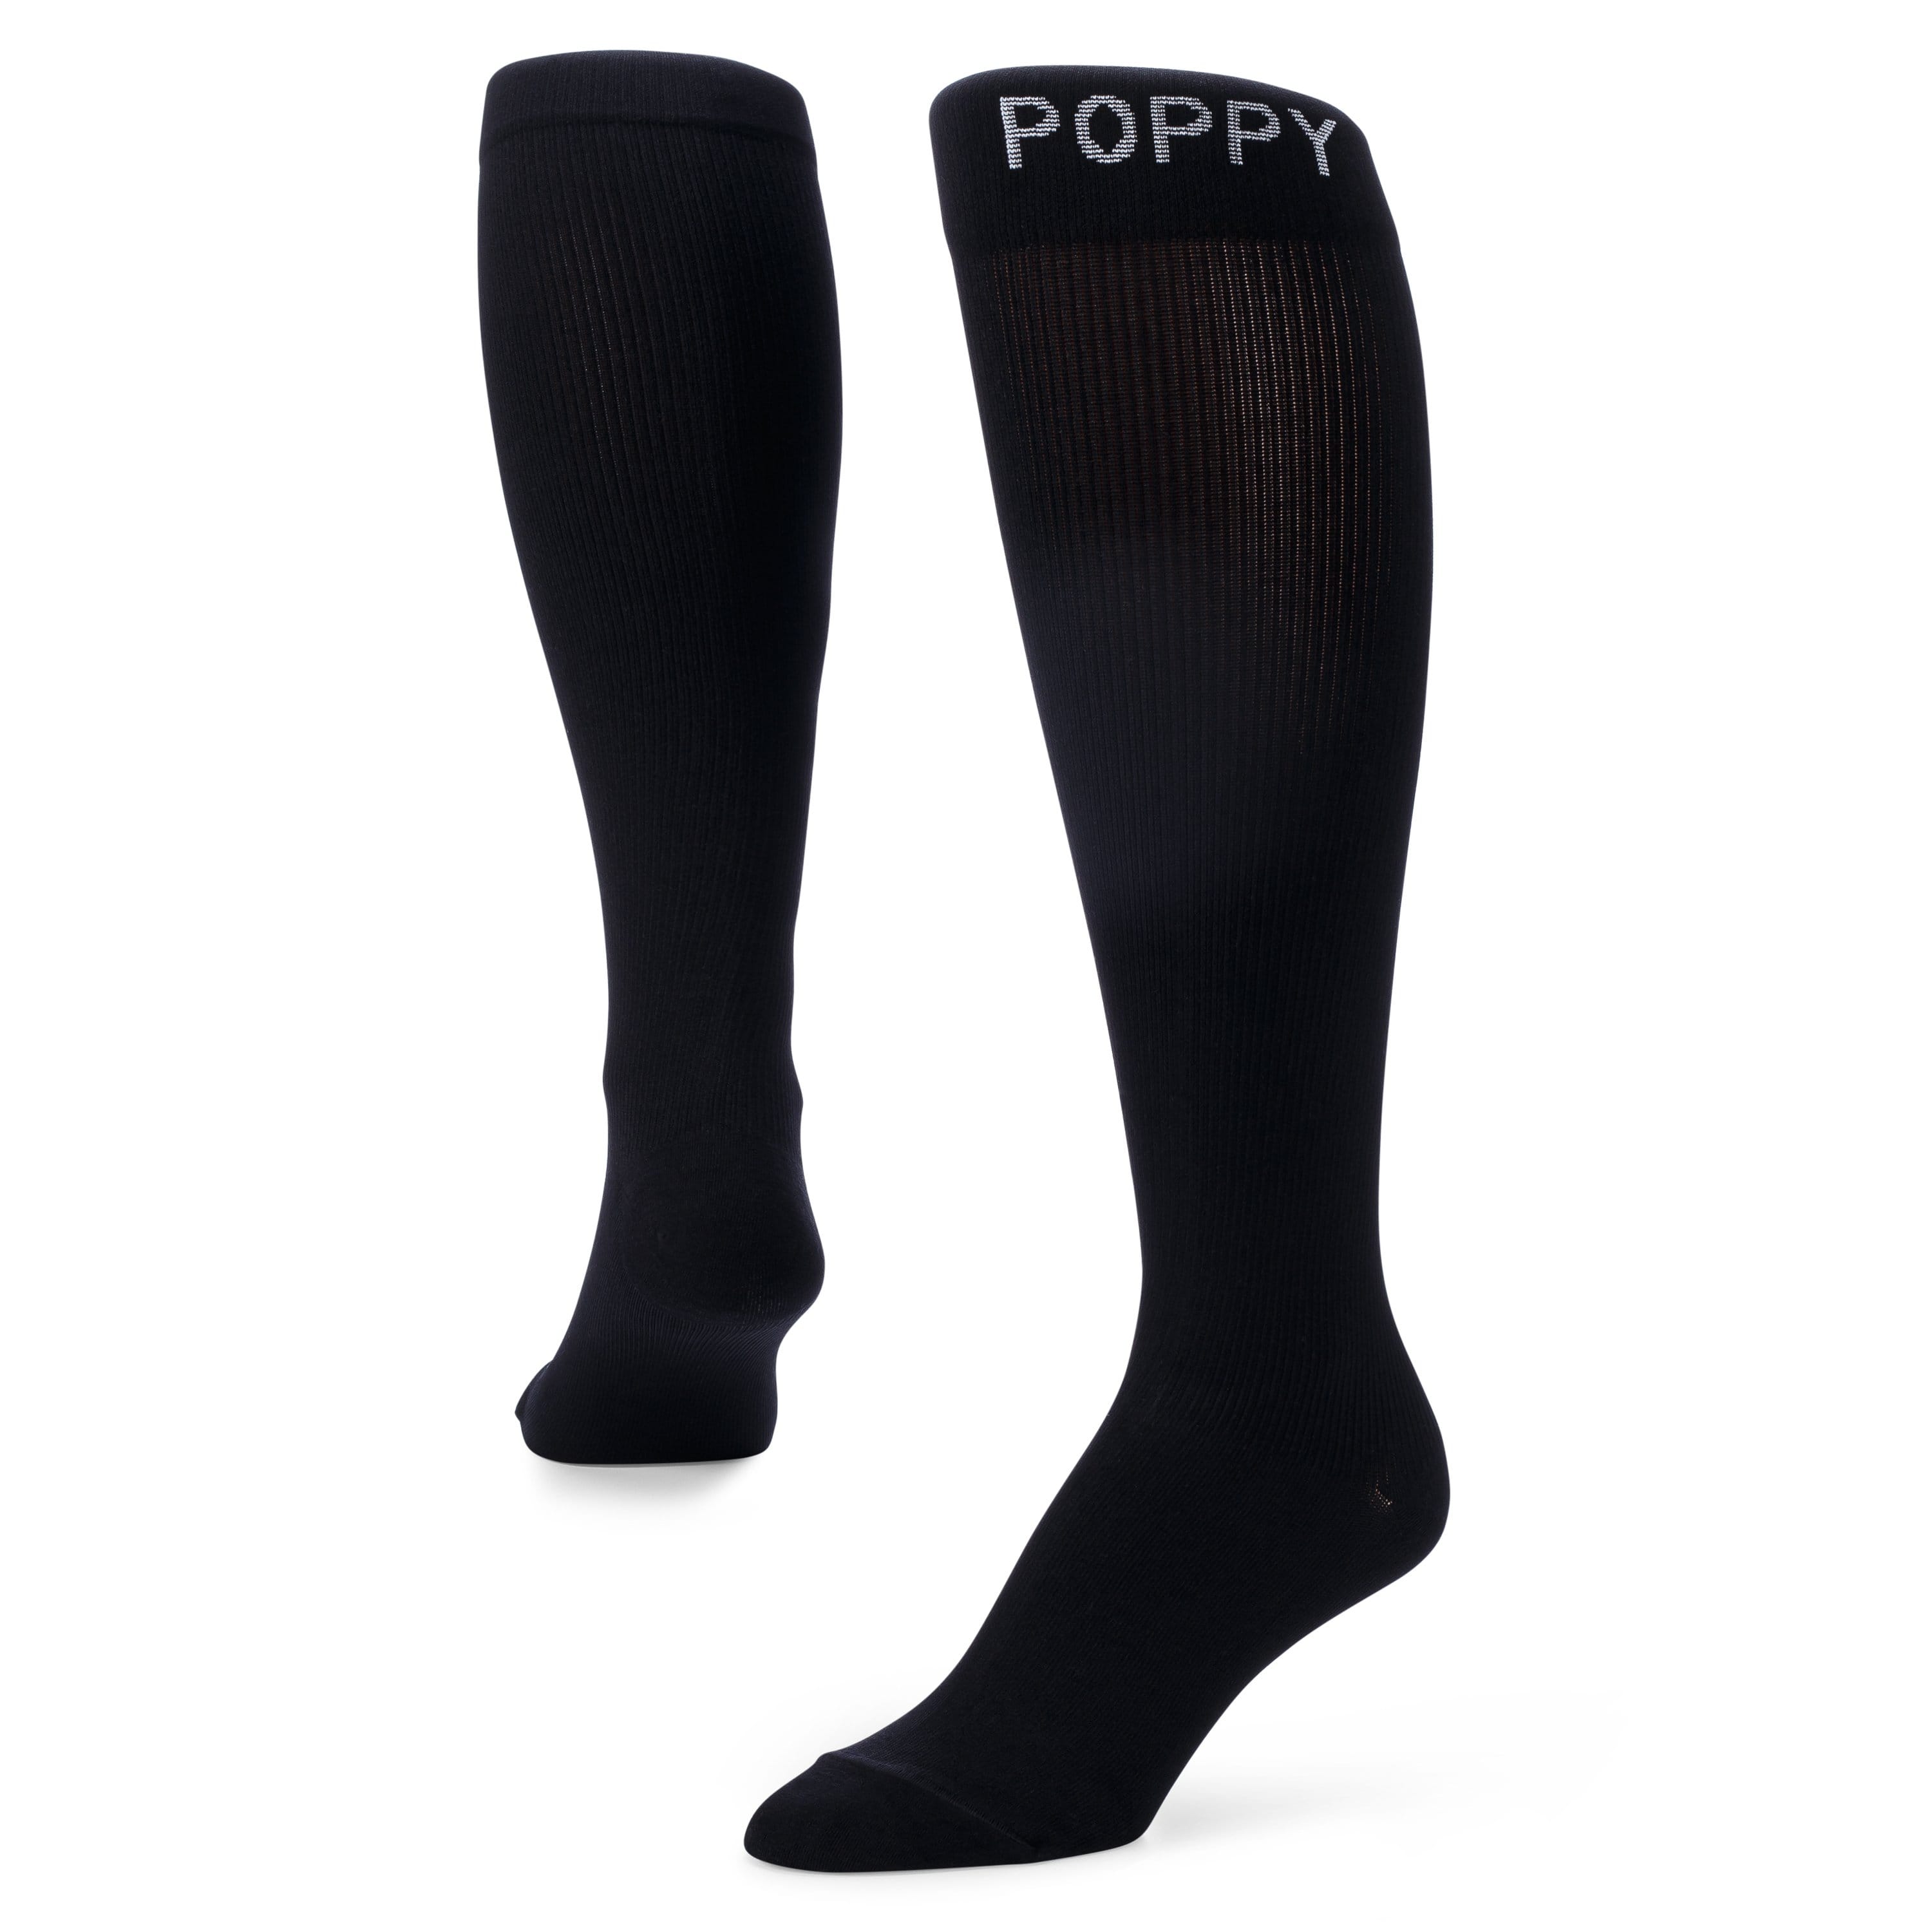 Poppy Scrubs Socks Free Gift - Premium Black Socks